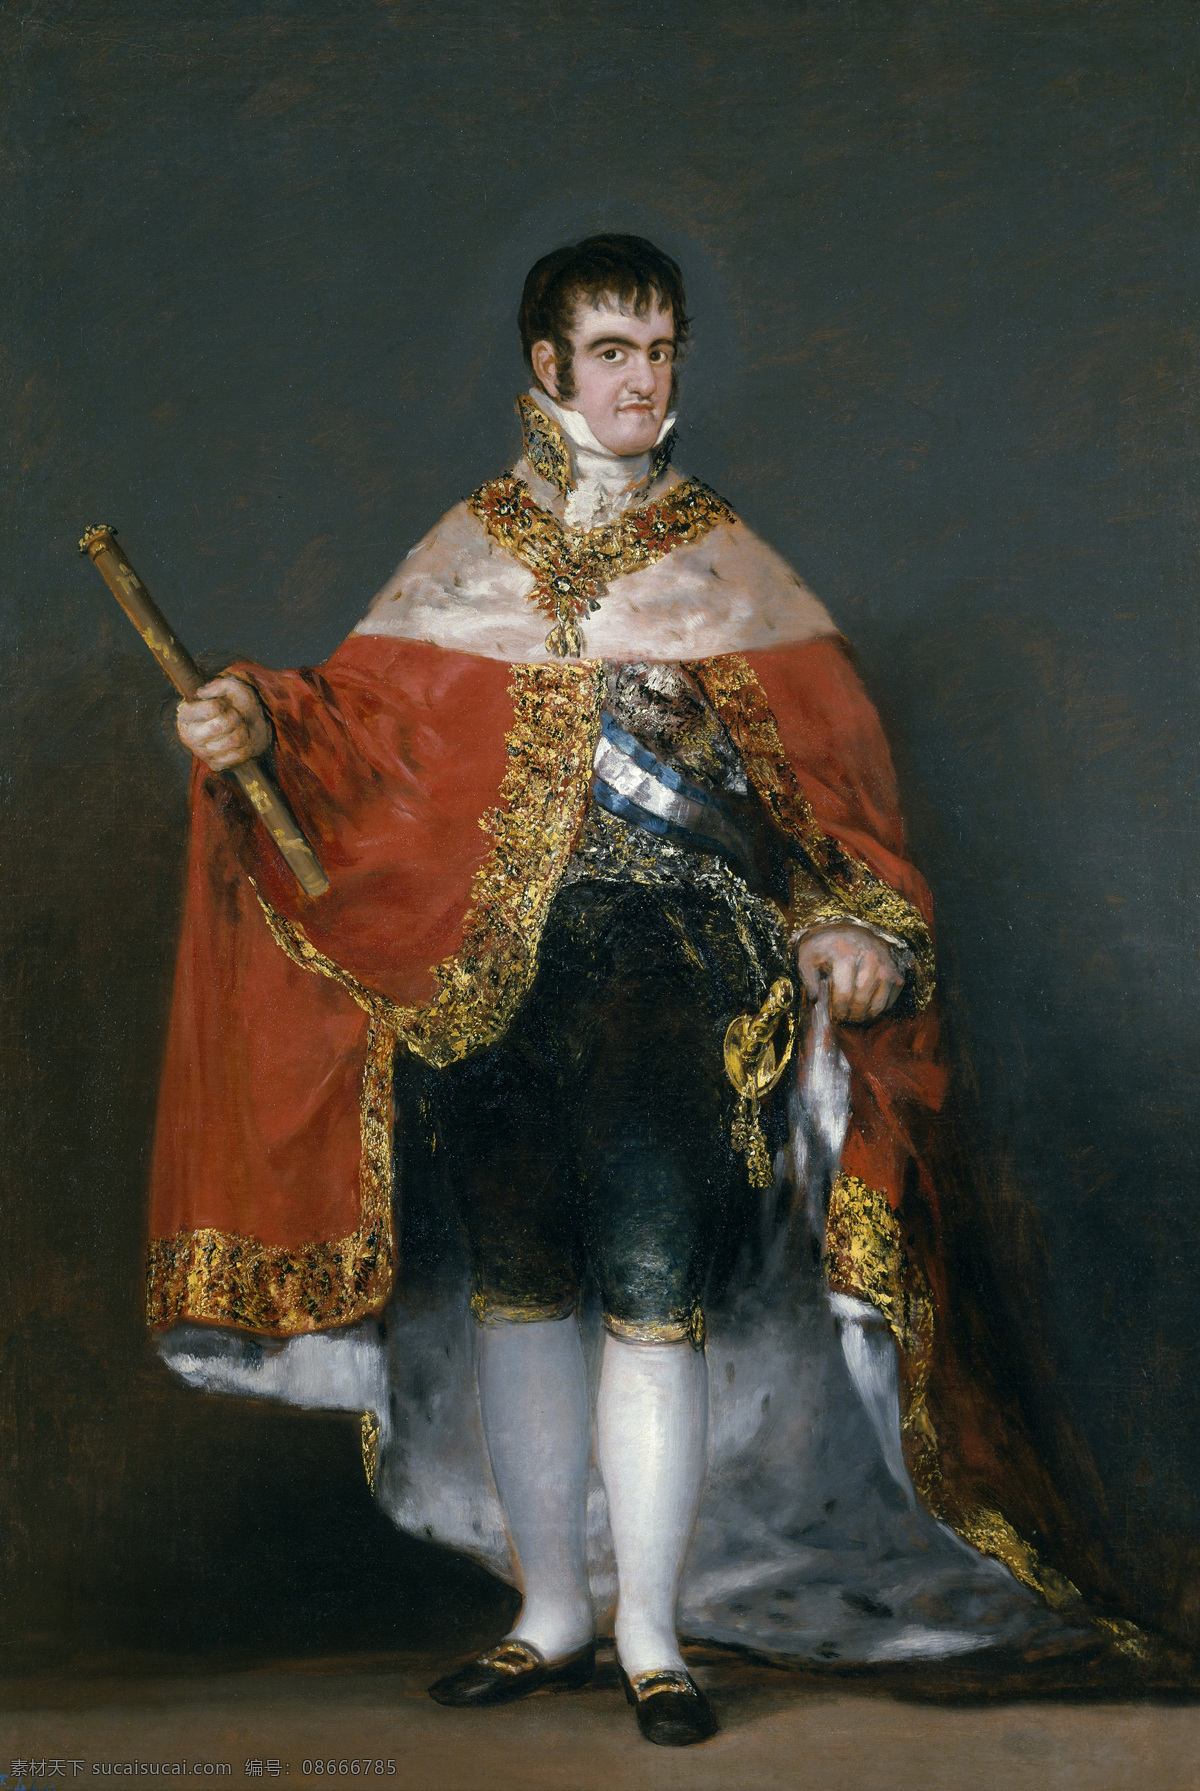 弗朗西斯科 戈雅 作品 国王 费尔南多 七 世 普拉多 油画肖像艺术 浪漫主义 西班牙画家 绘画书法 文化艺术